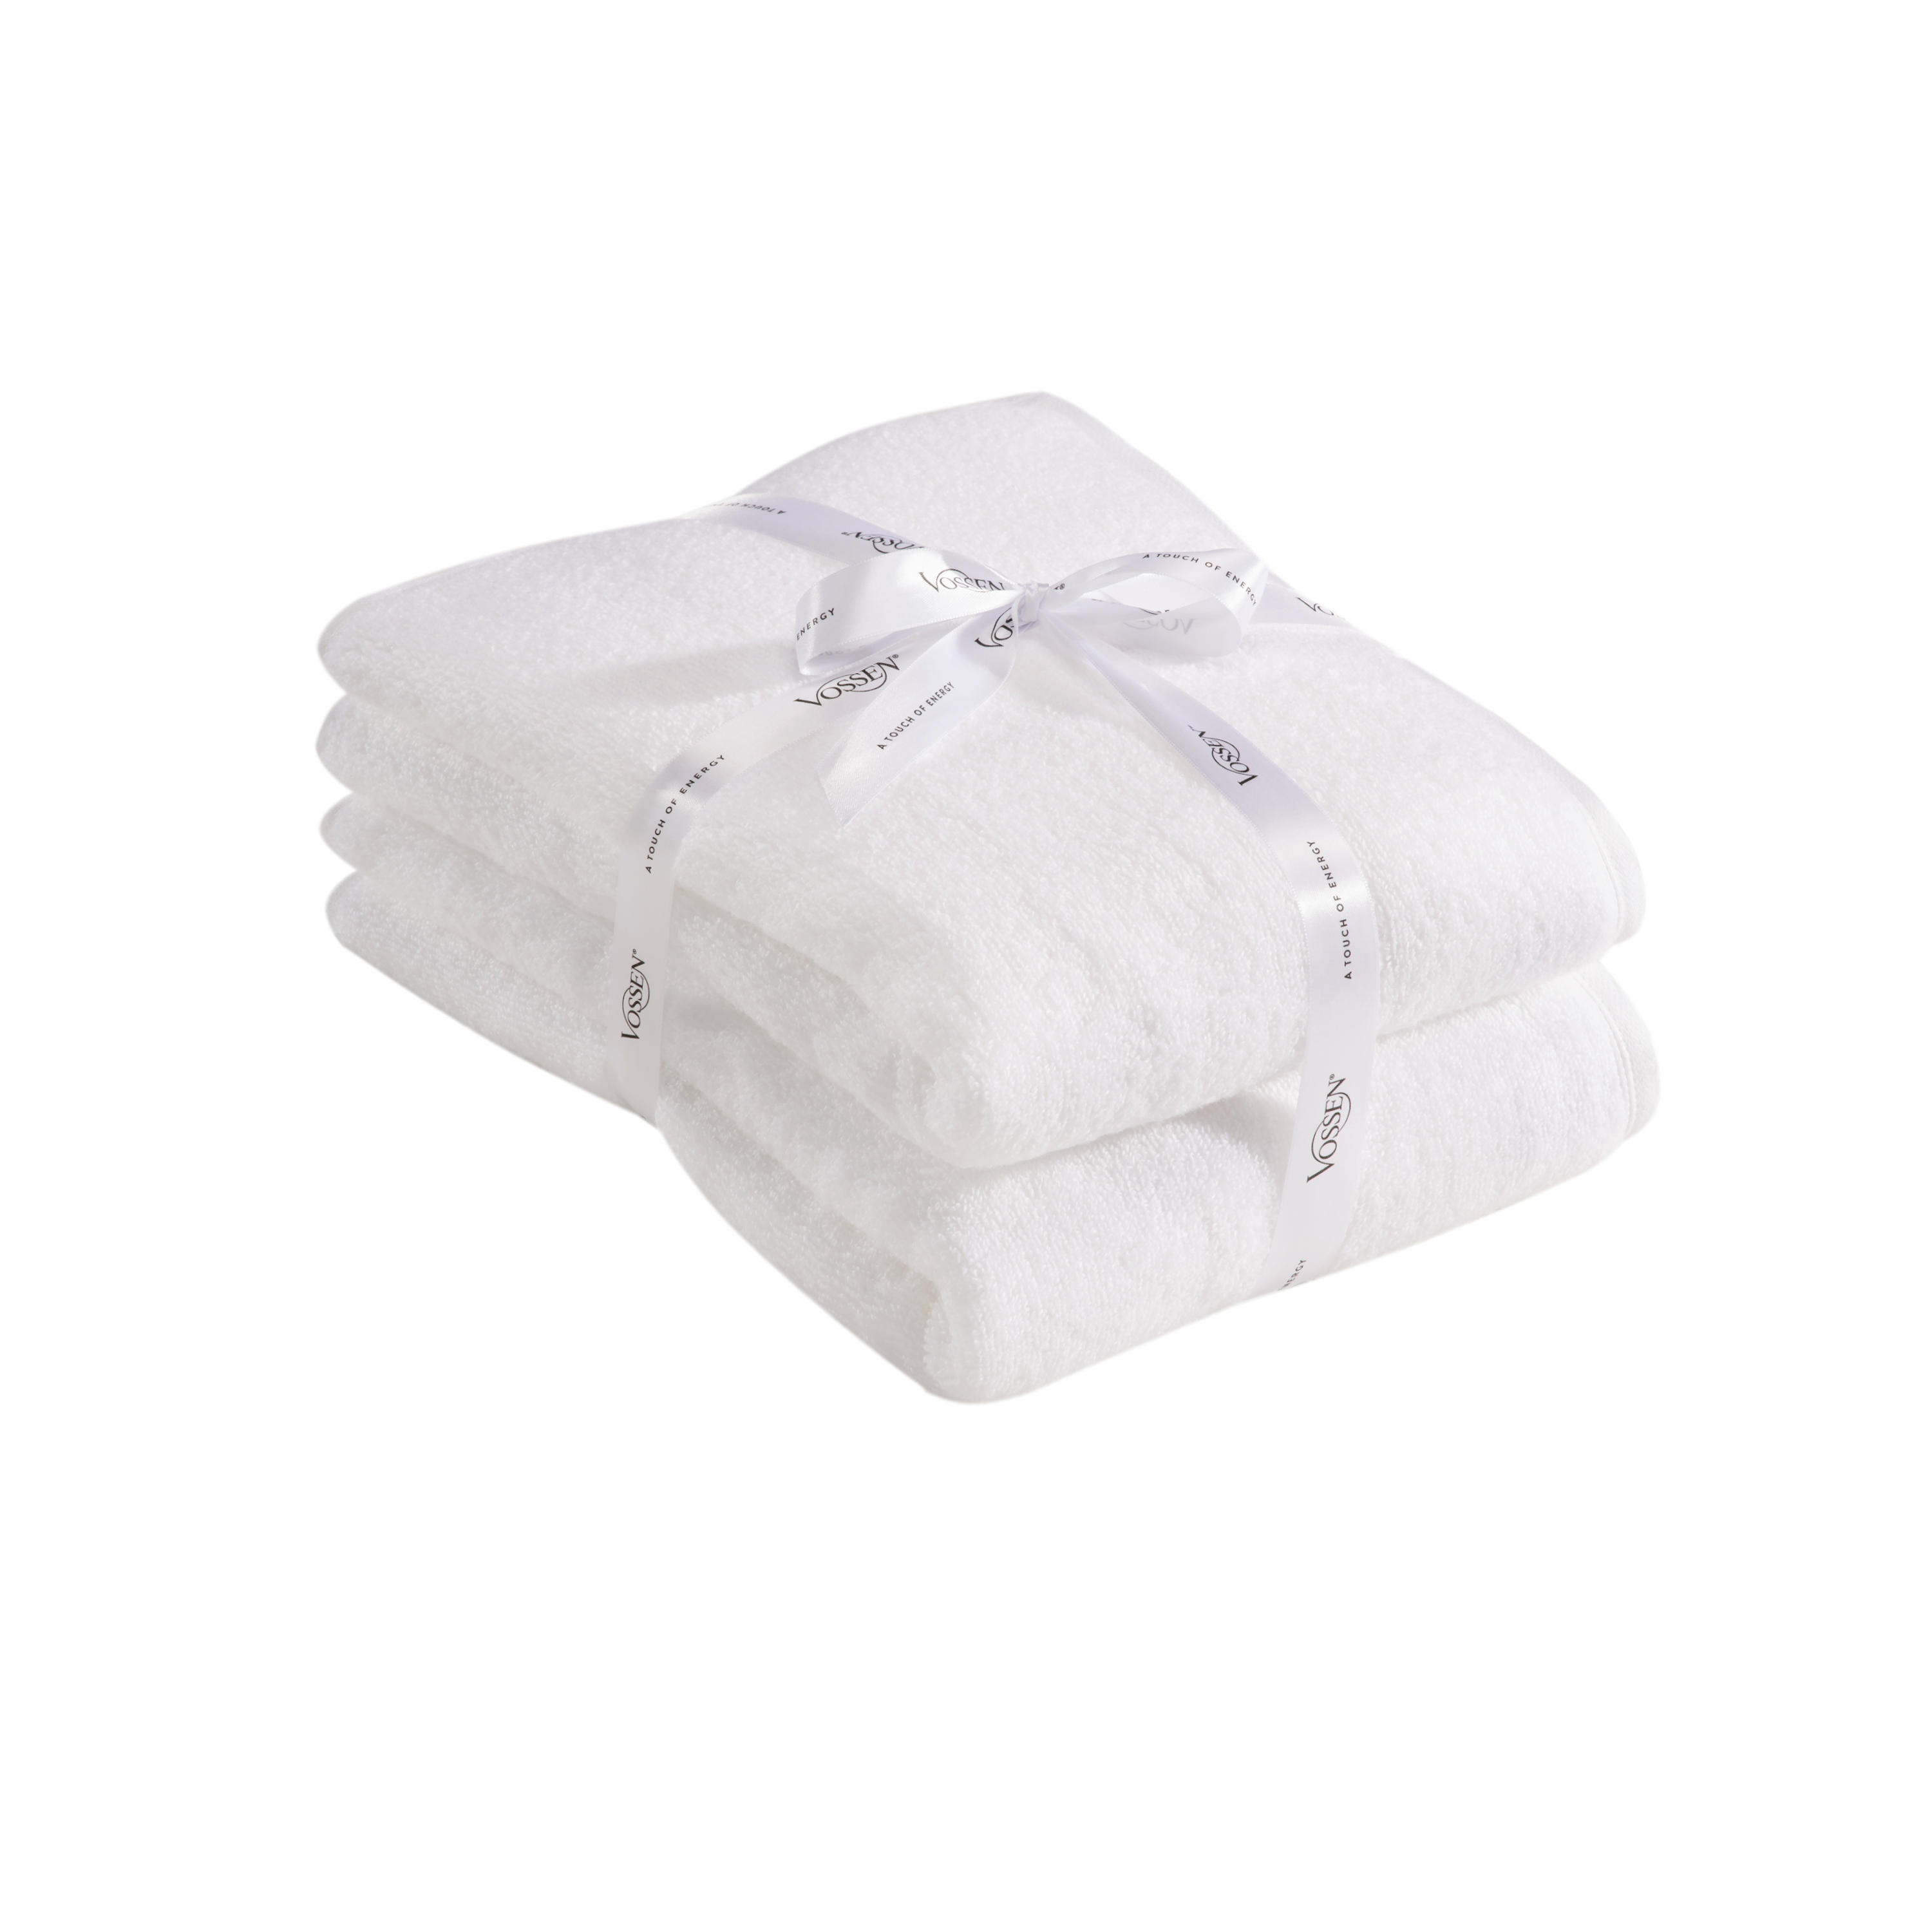 DUSCHTUCH Smart Towel 67/140 cm  - Weiß, Basics, Textil (67/140cm) - Vossen